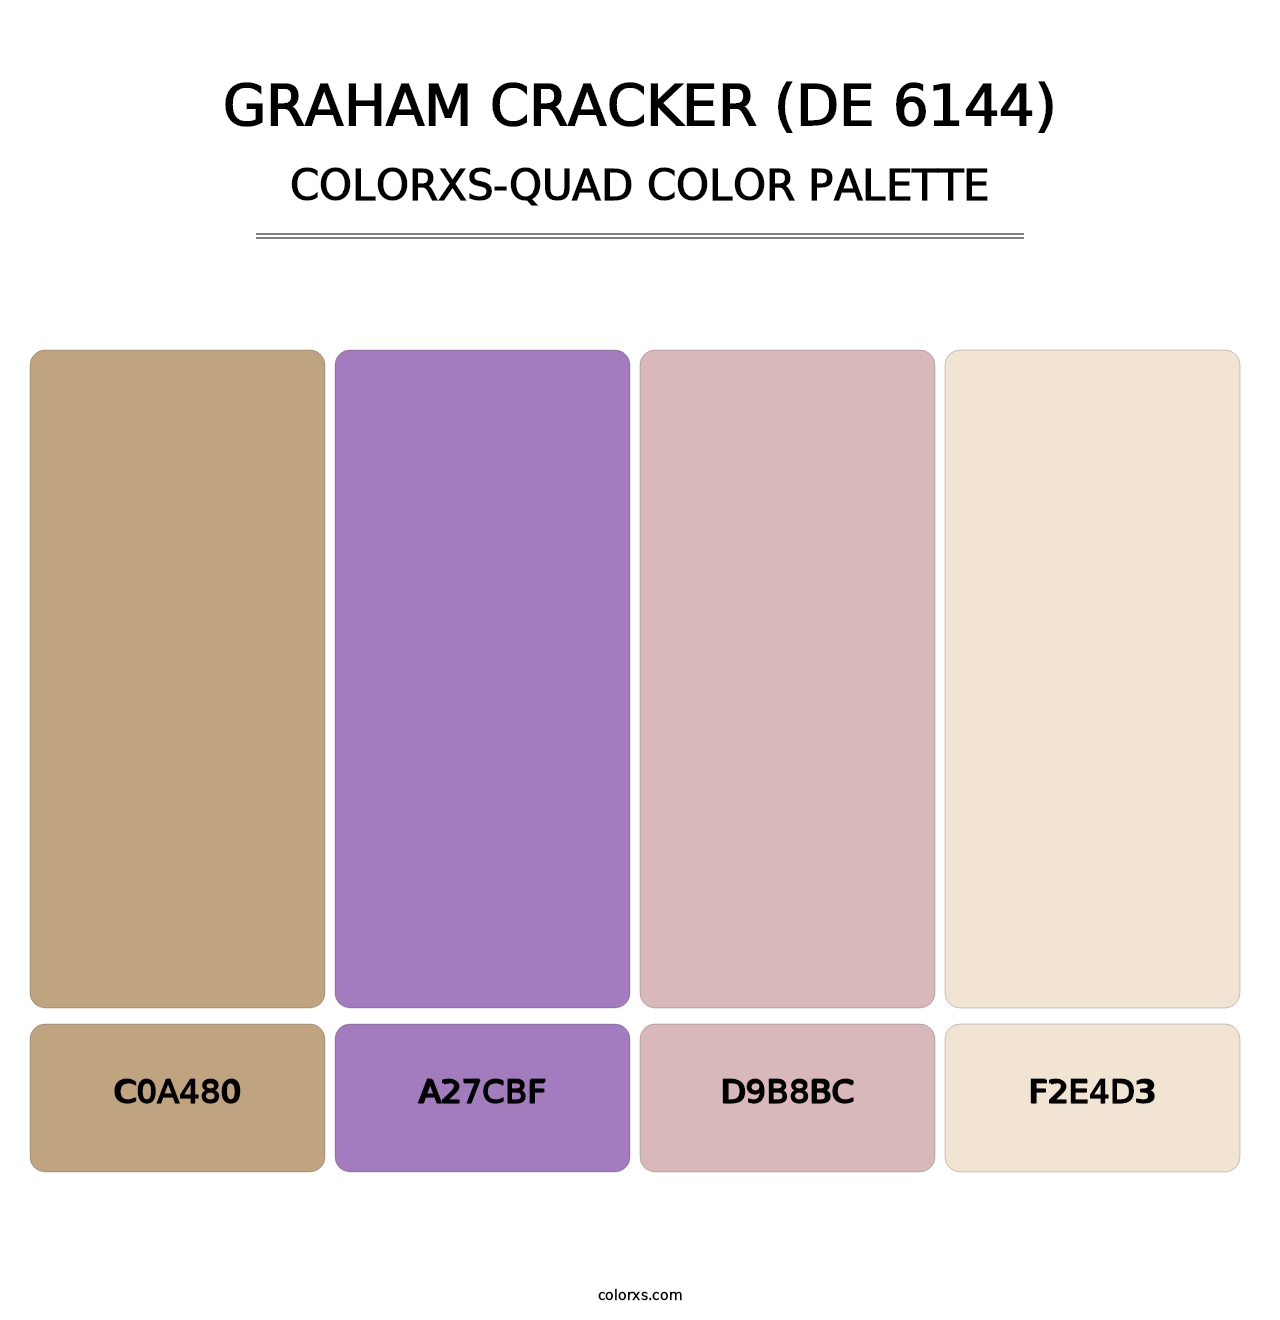 Graham Cracker (DE 6144) - Colorxs Quad Palette